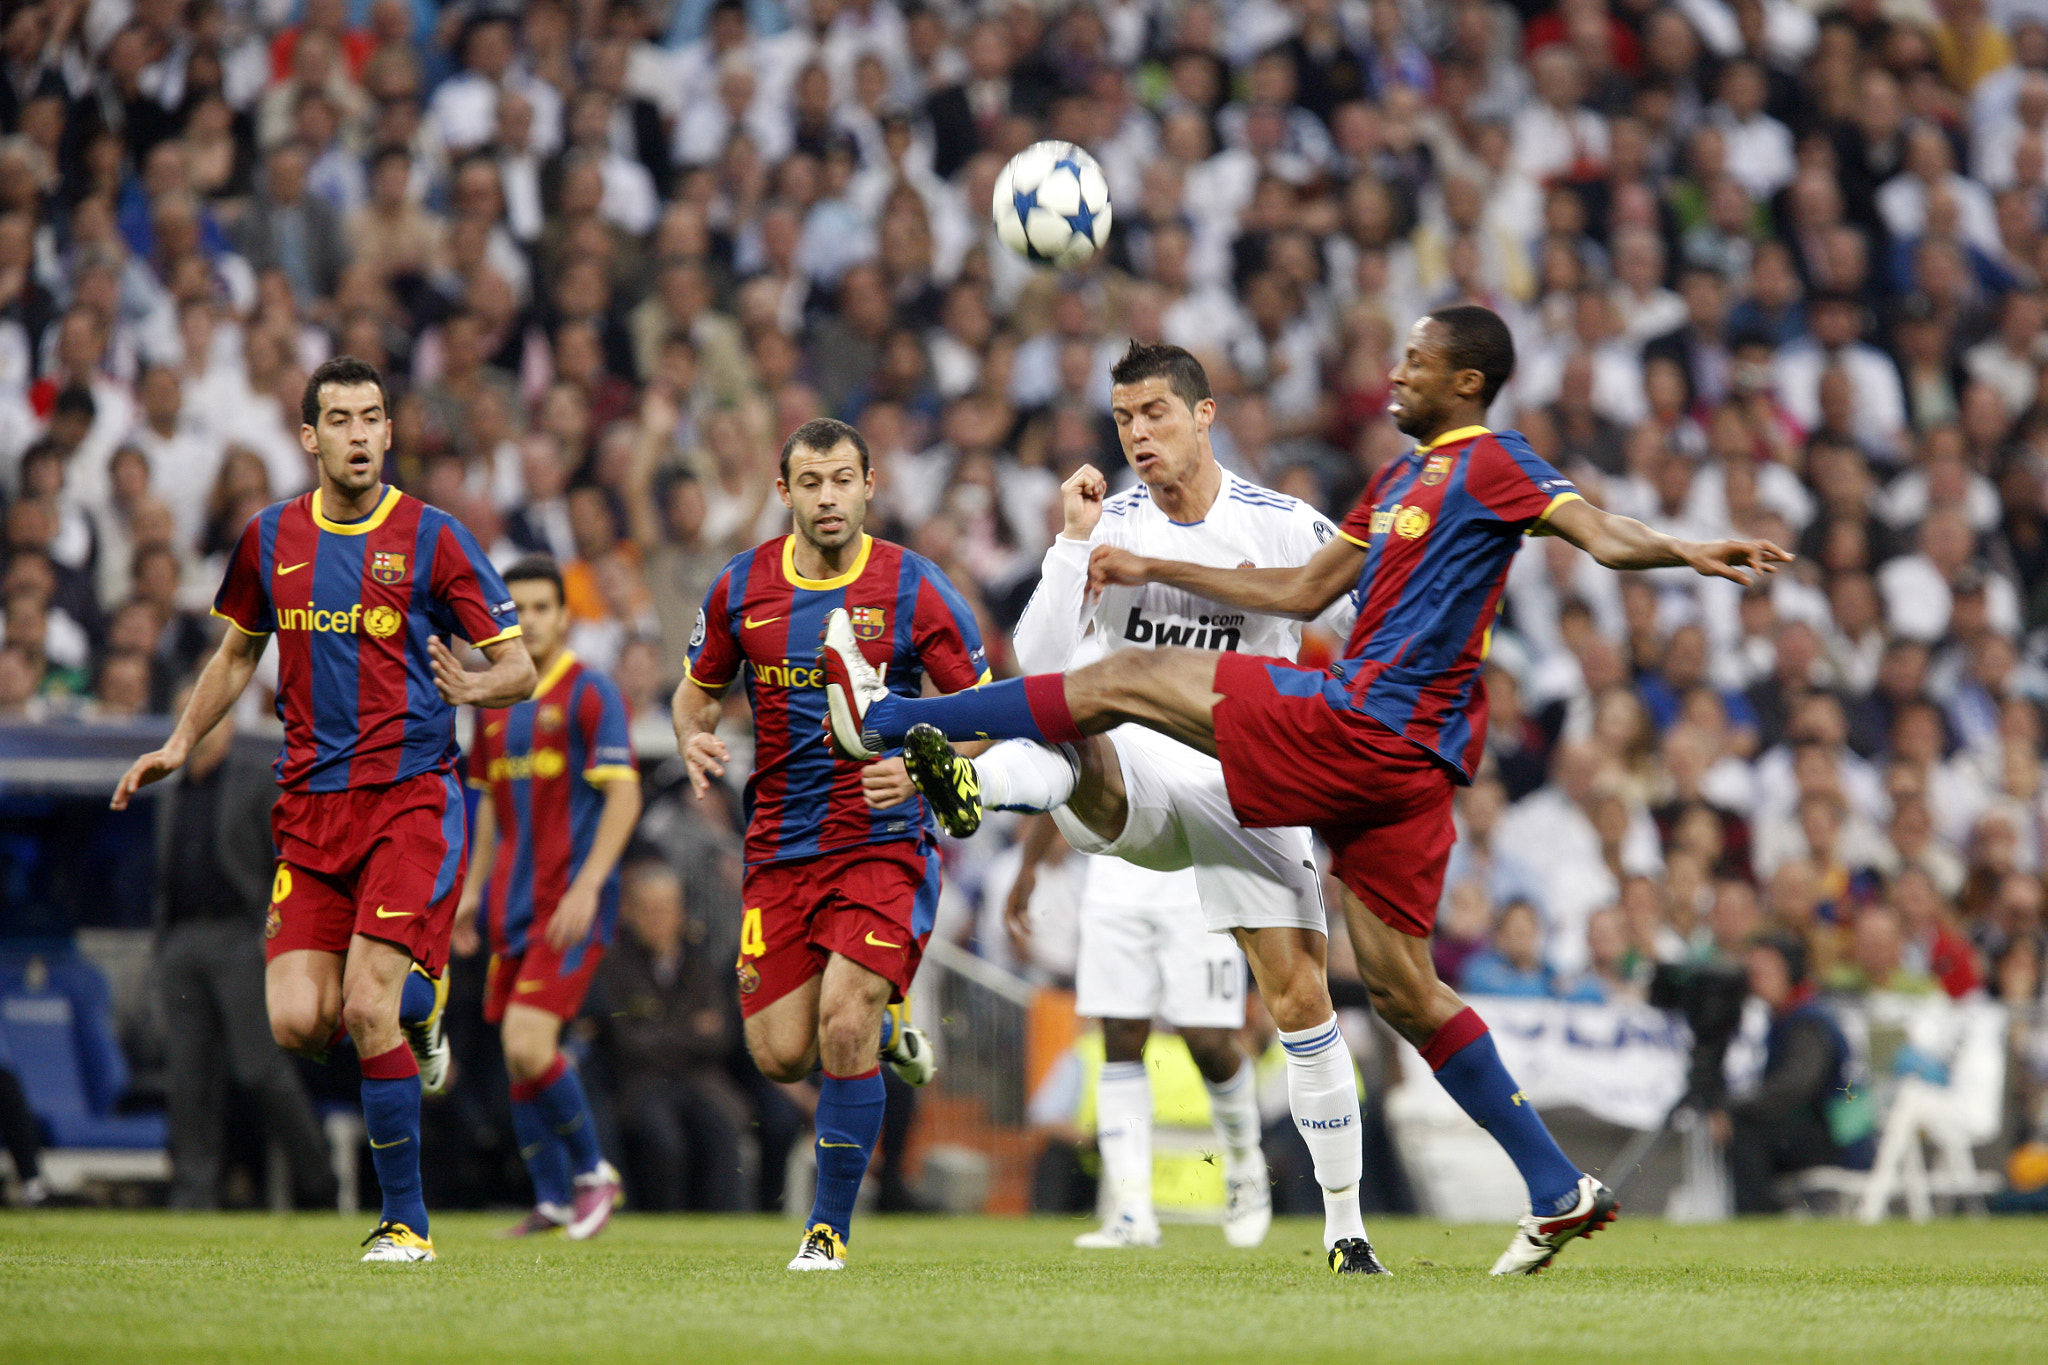 Keita defending before Ronaldo, UEFA Champions League Semifinals game between Real Madrid and FC Bar